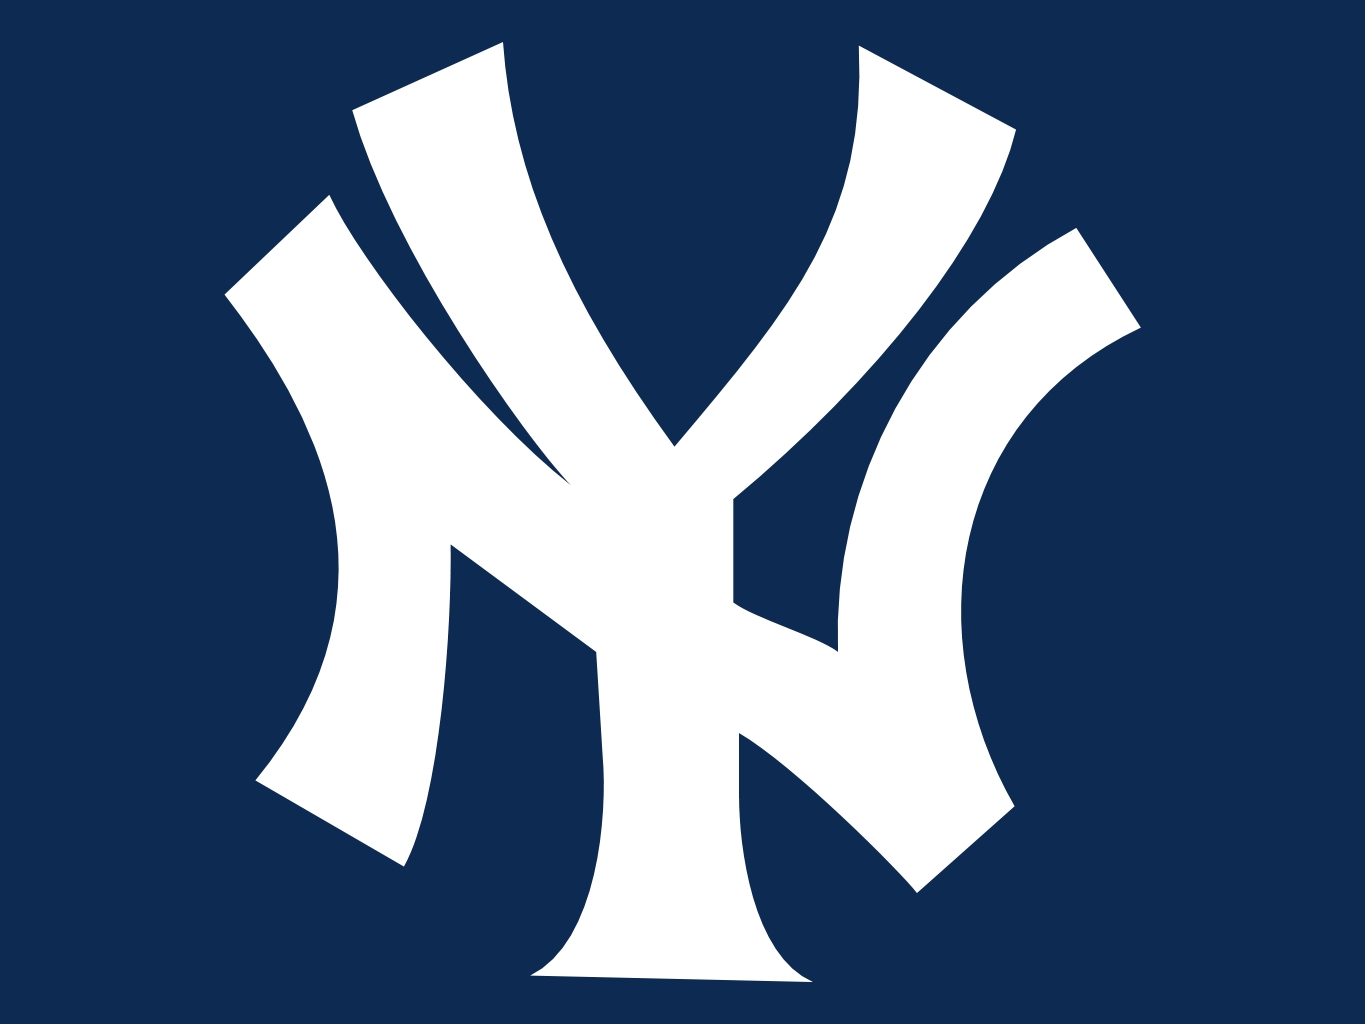 New York Yankees team